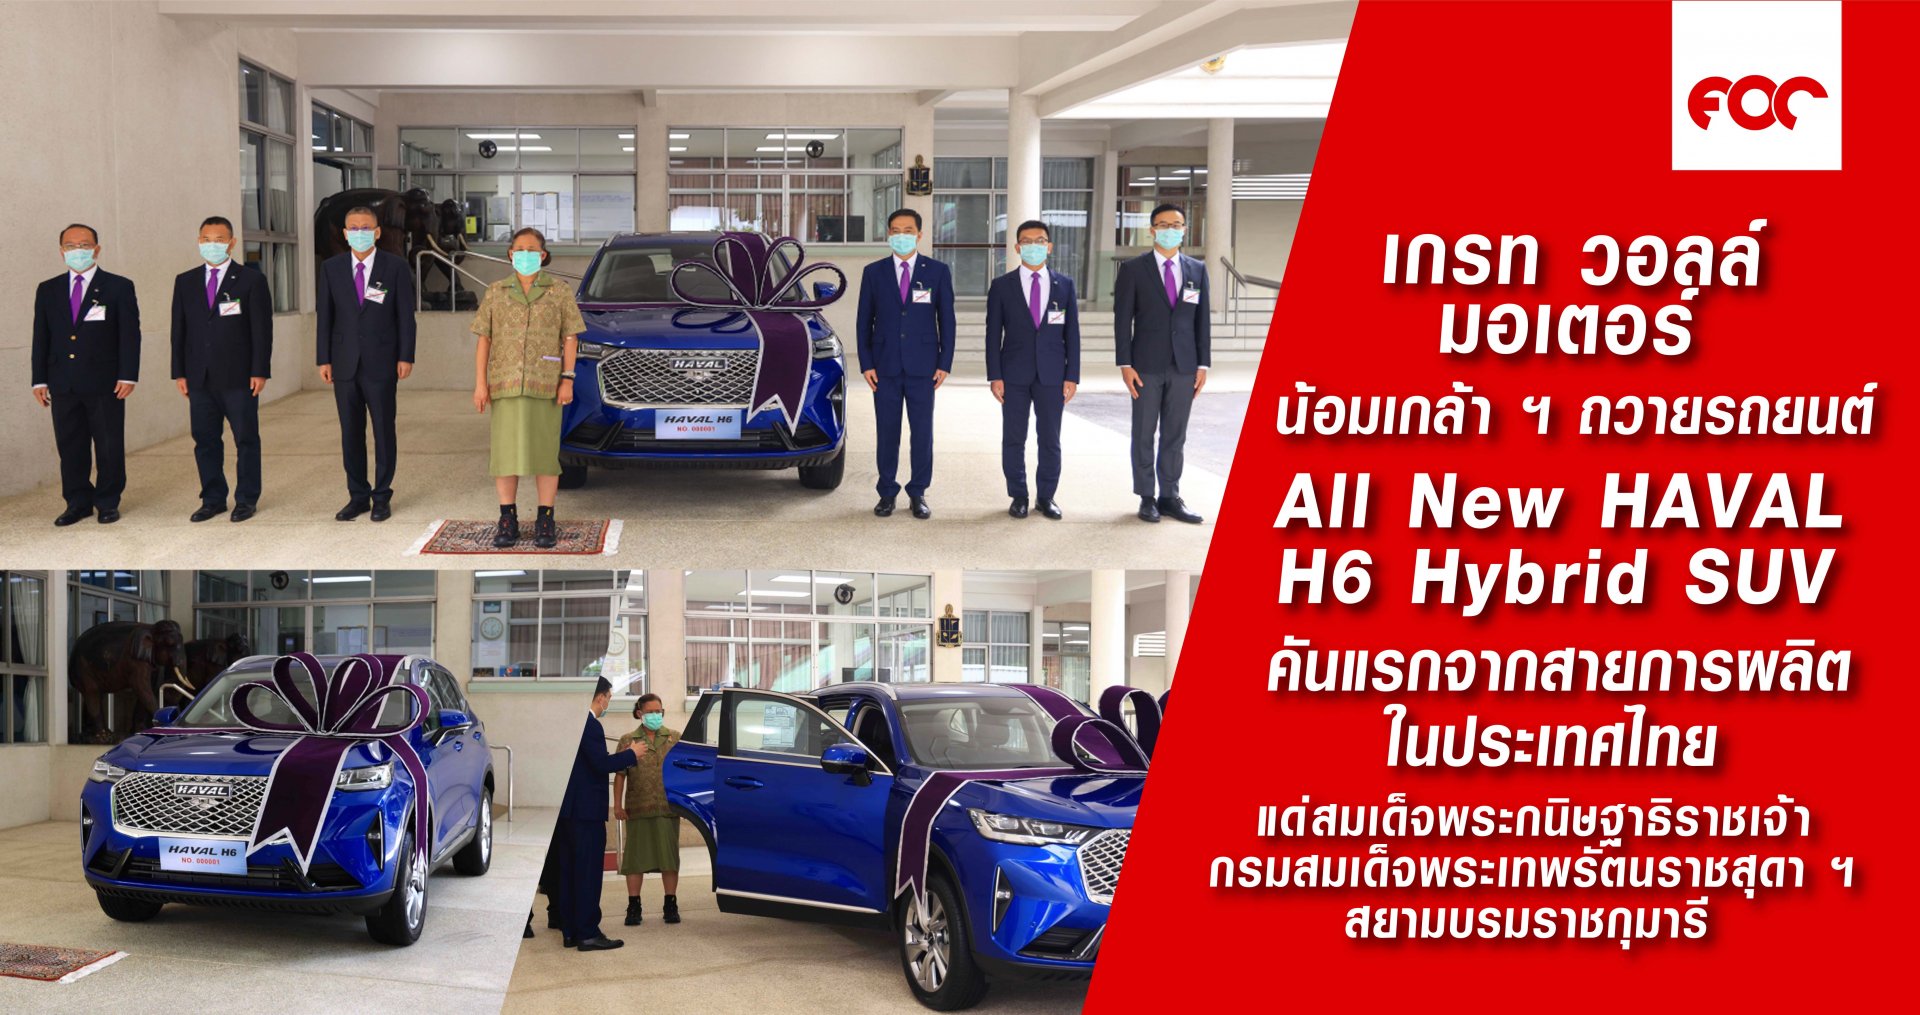 เกรท วอลล์ มอเตอร์ น้อมเกล้า ฯ ถวายรถยนต์ All New HAVAL H6 Hybrid SUV  คันแรกจากสายการผลิตในประเทศไทย แด่สมเด็จพระกนิษฐาธิราชเจ้า กรมสมเด็จพระเทพรัตนราชสุดา ฯ สยามบรมราชกุมารี